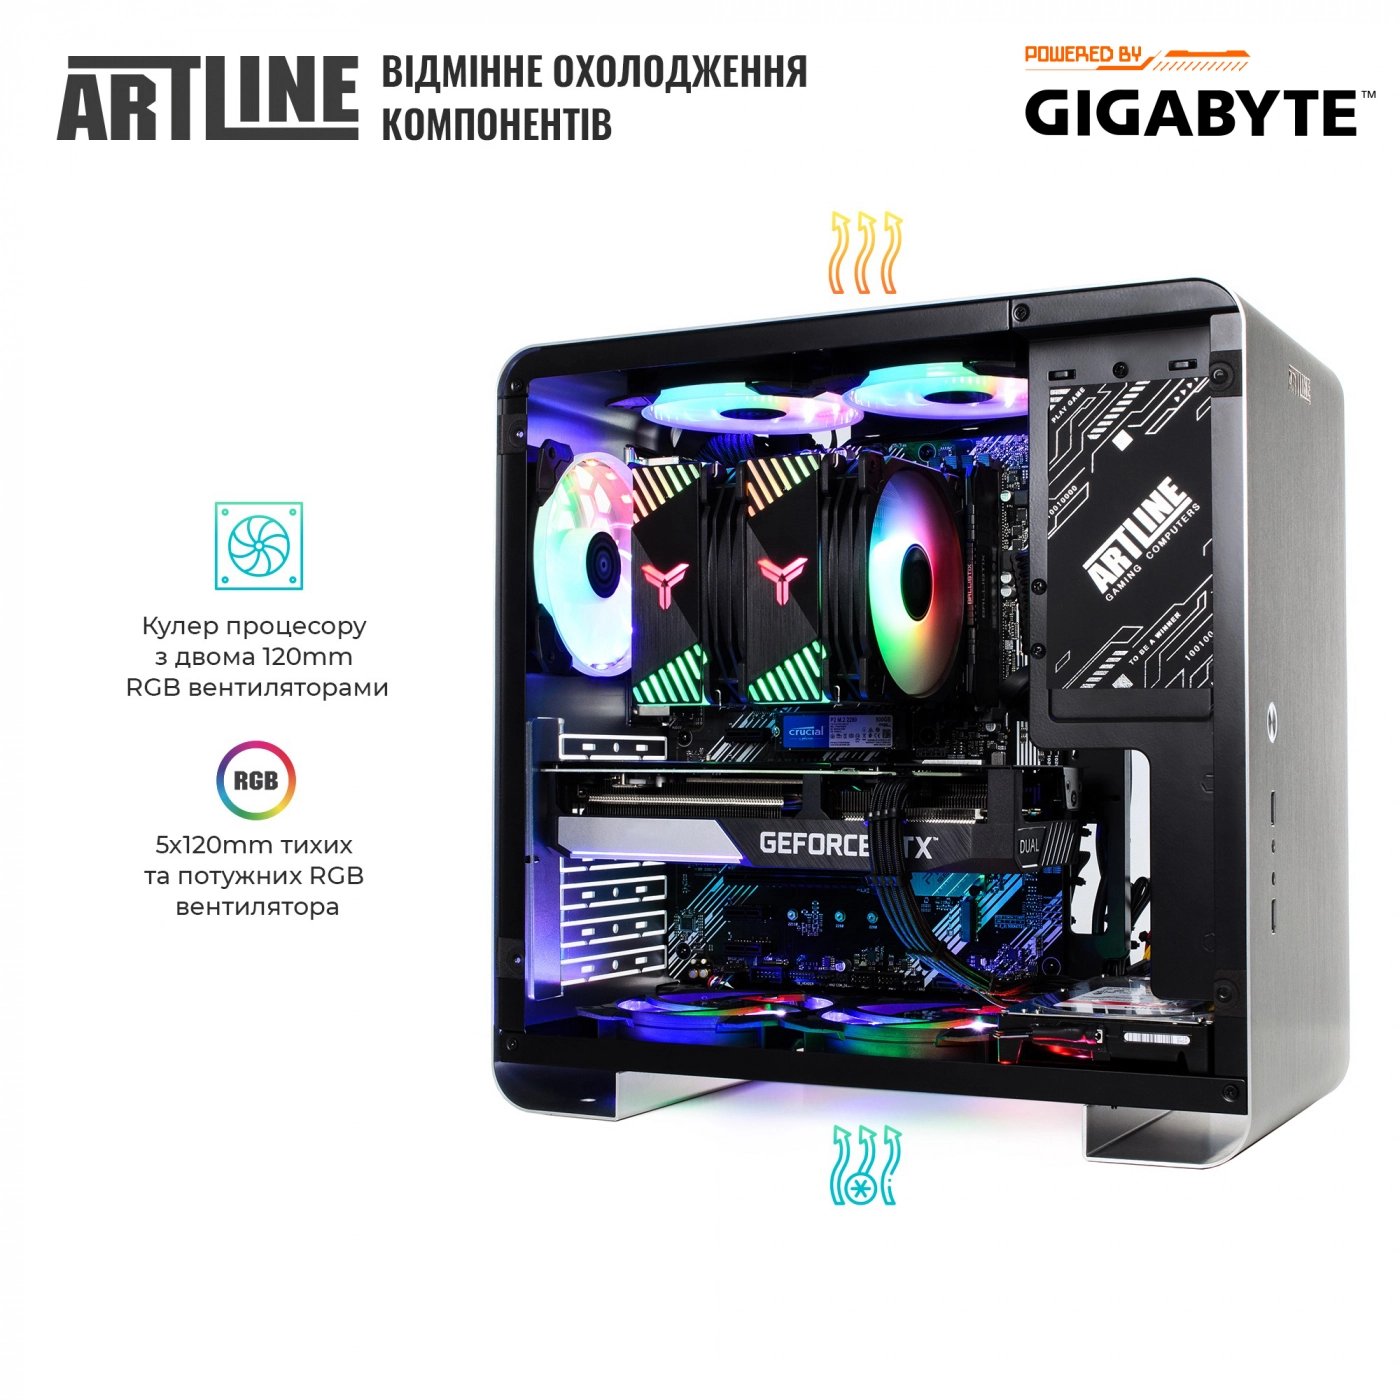 Купить Компьютер ARTLINE Gaming X55v33 - фото 9